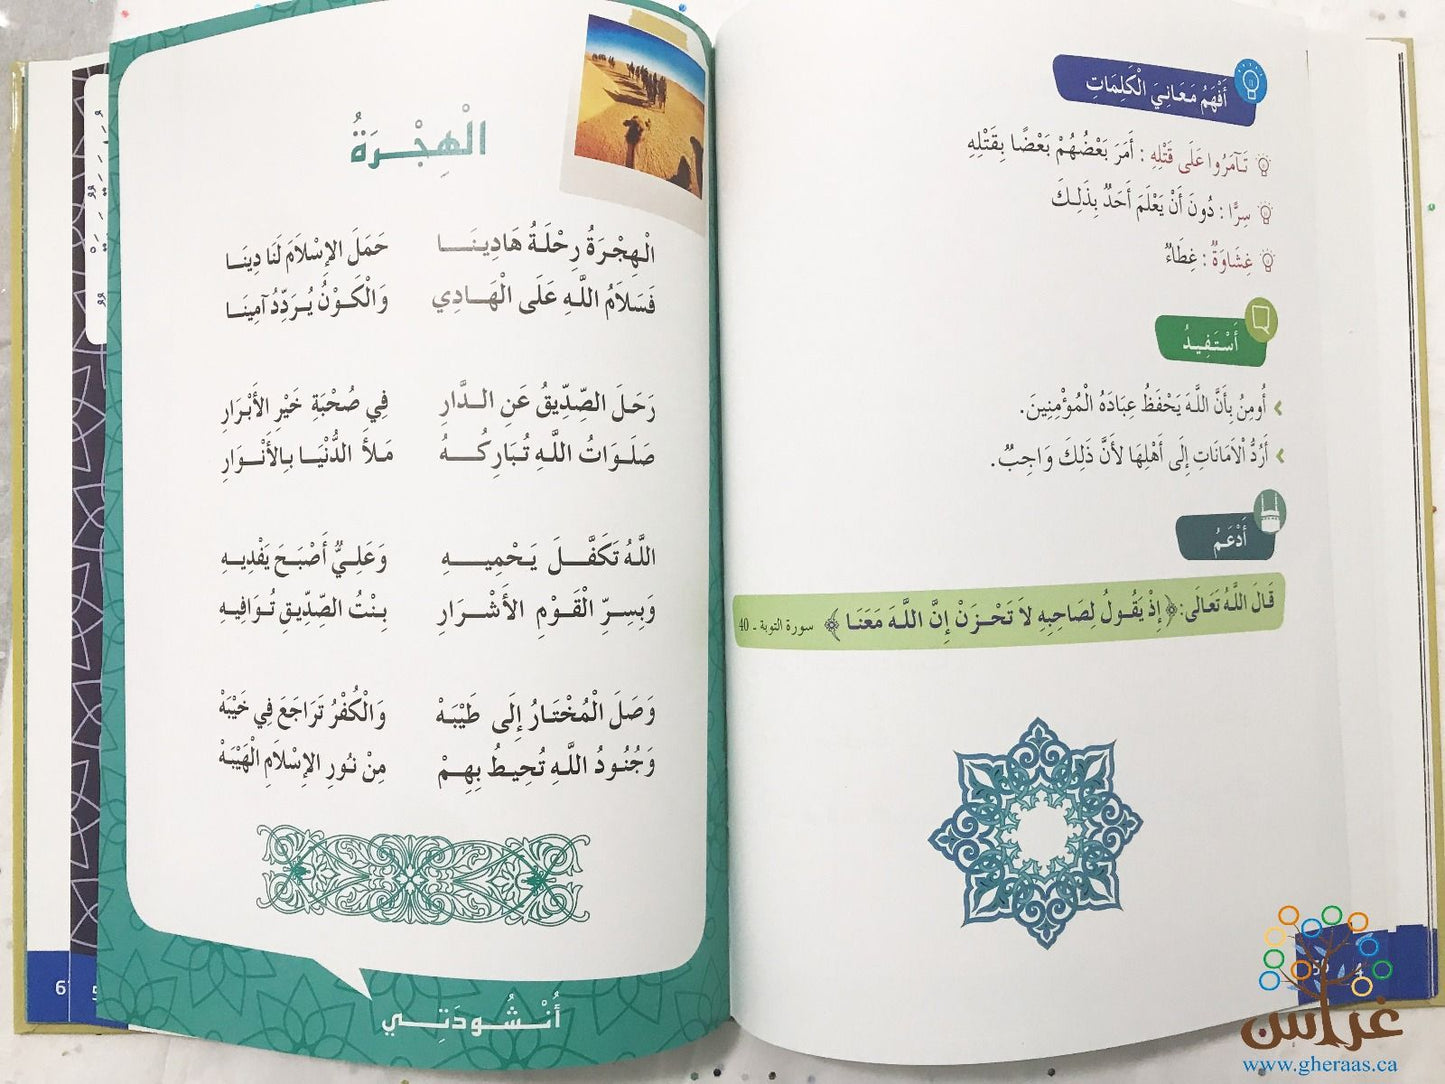 منهج التربية الإسلامية - المستوى 4  ||  Islamic Education curriculum - Level 4